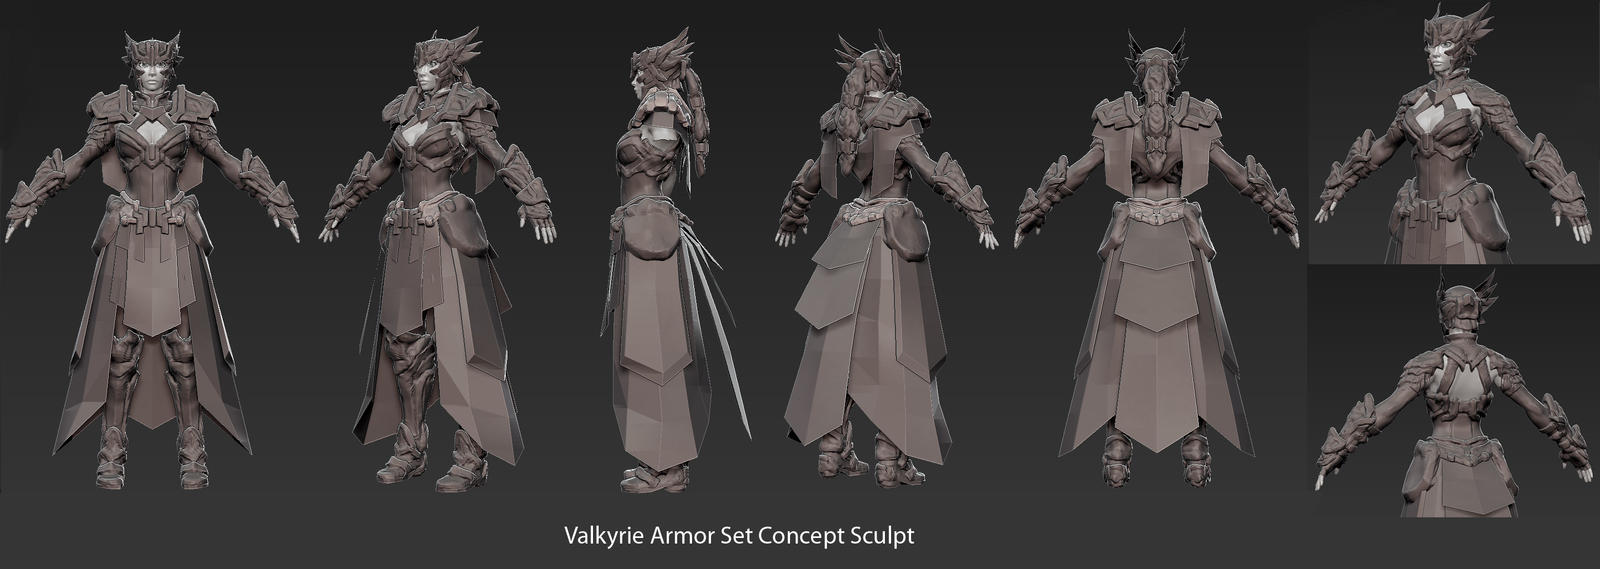 valkyrie_armor_concept_sculpt_by_0skyers0-d5usqca.jpg